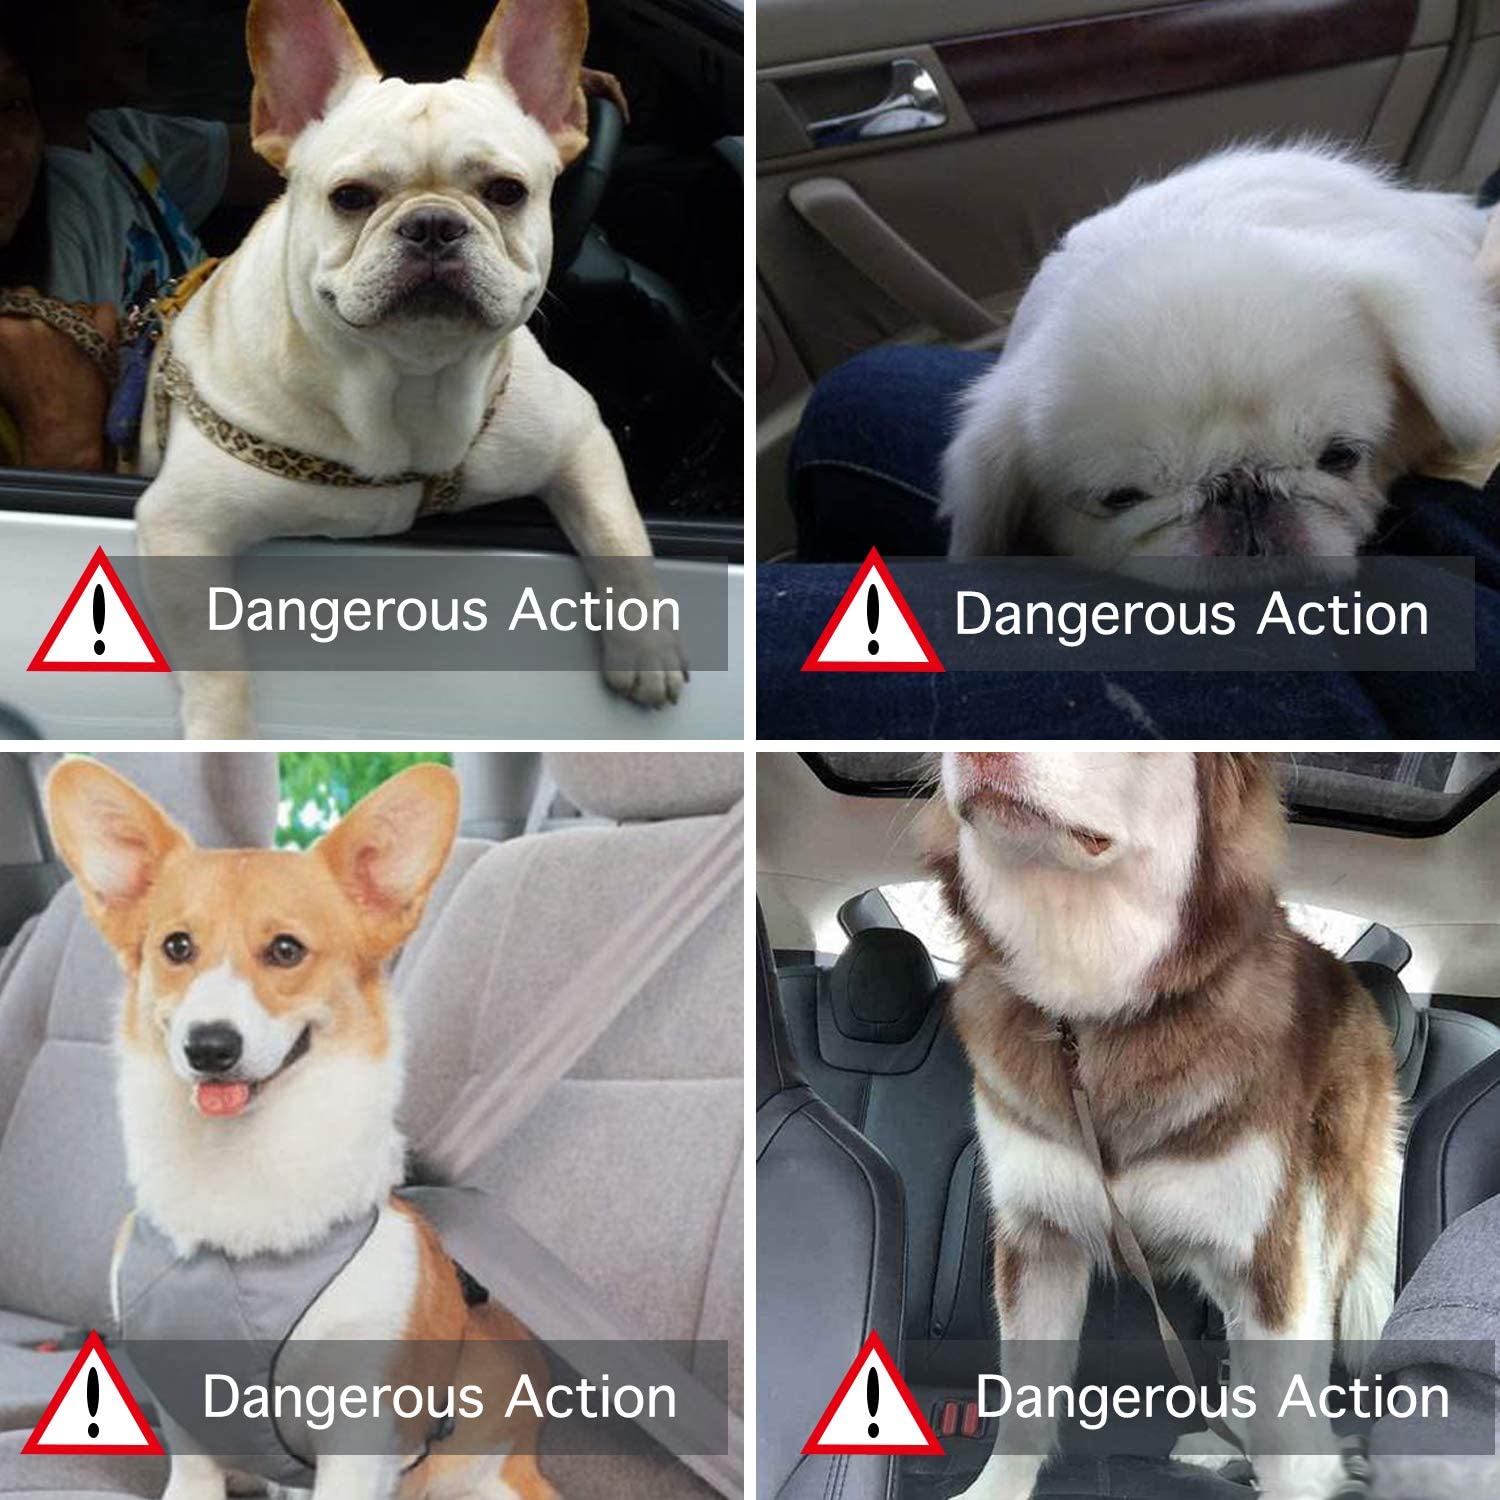  Petxt Asiento de Seguridad para Mascotas, Asiento de Seguridad Plegable para Viajes en automóvil con Clip de Seguridad para Gatos y Perros, Impermeable, cómodo, Transpirable (Huella Gris) 